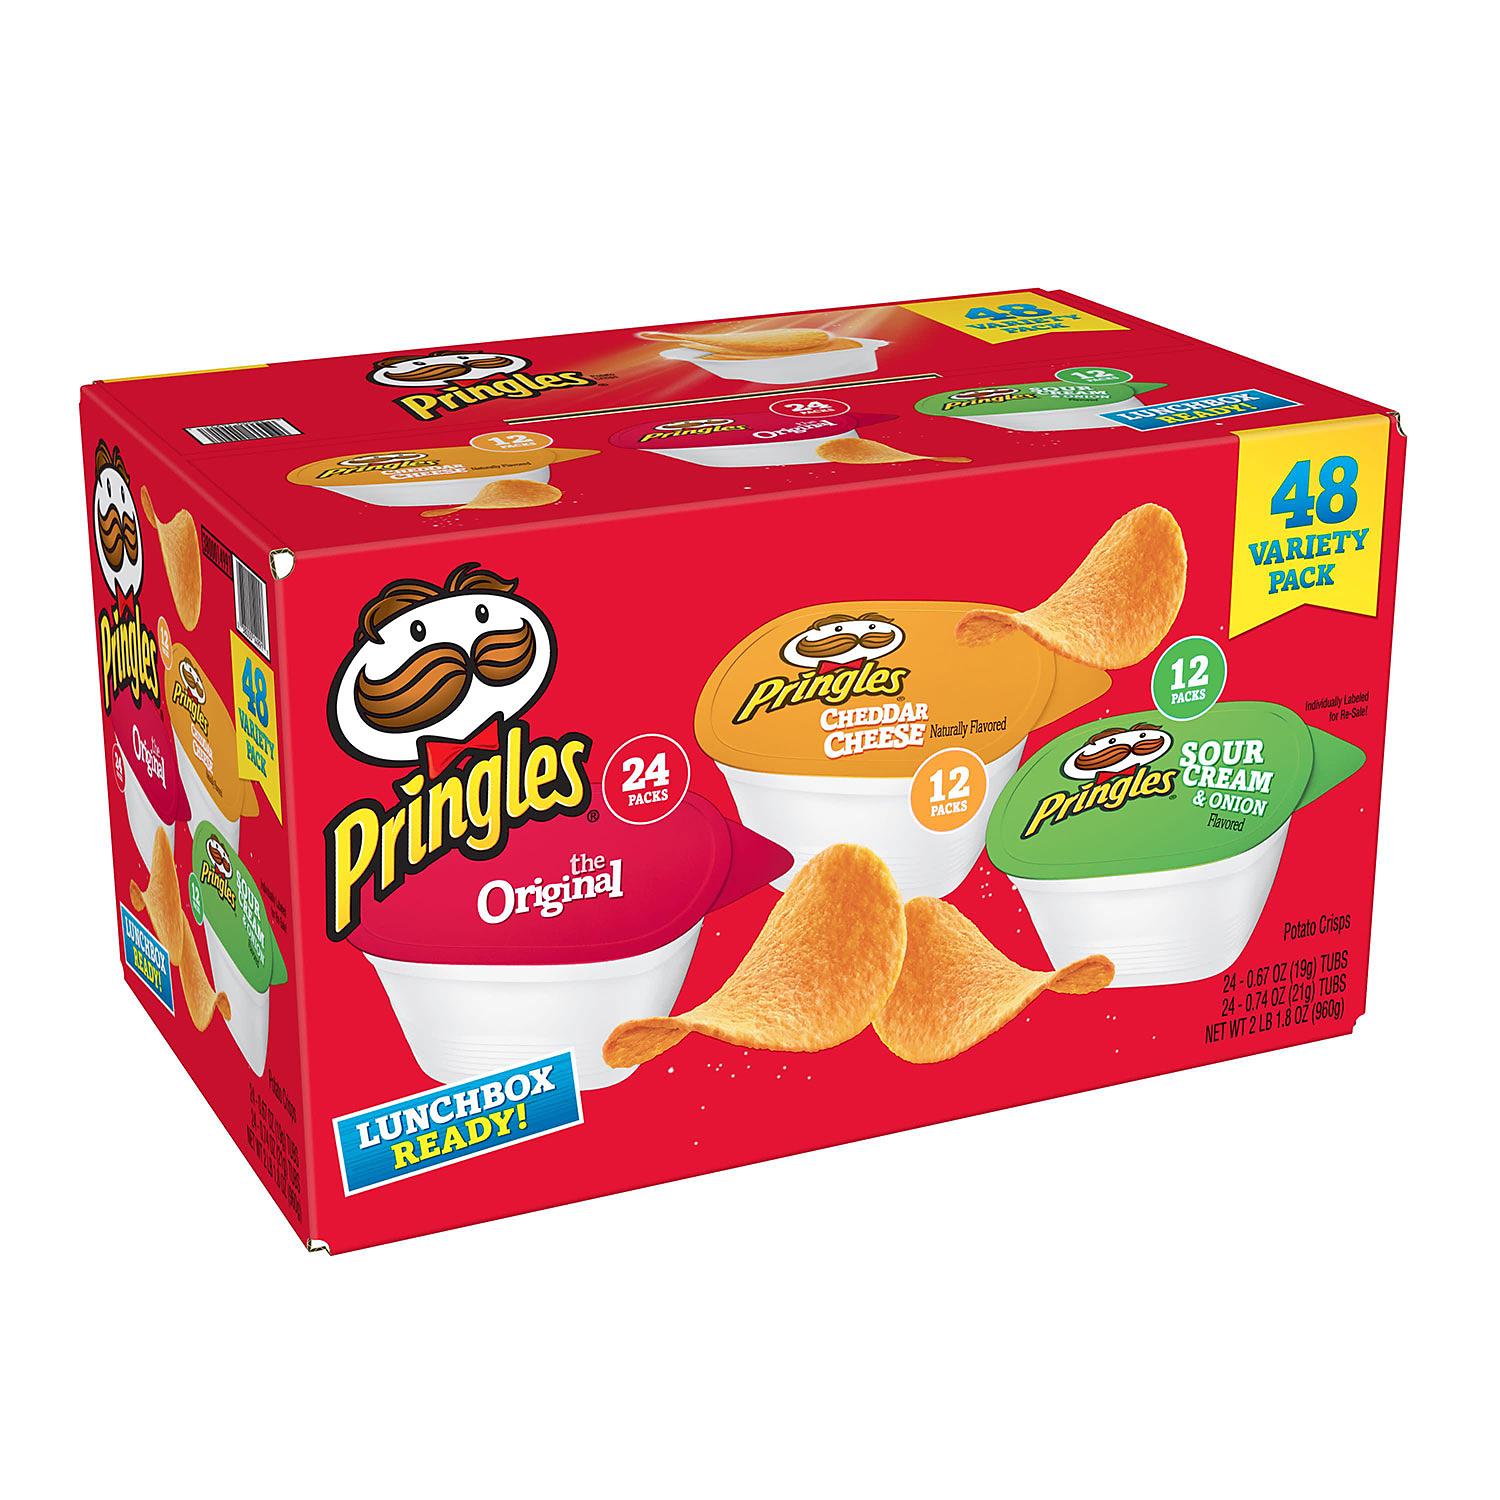 Pringles US Snack Stacks Variety Pack (24-org,12-soc,12-chdz) - 0.74oz/48pk